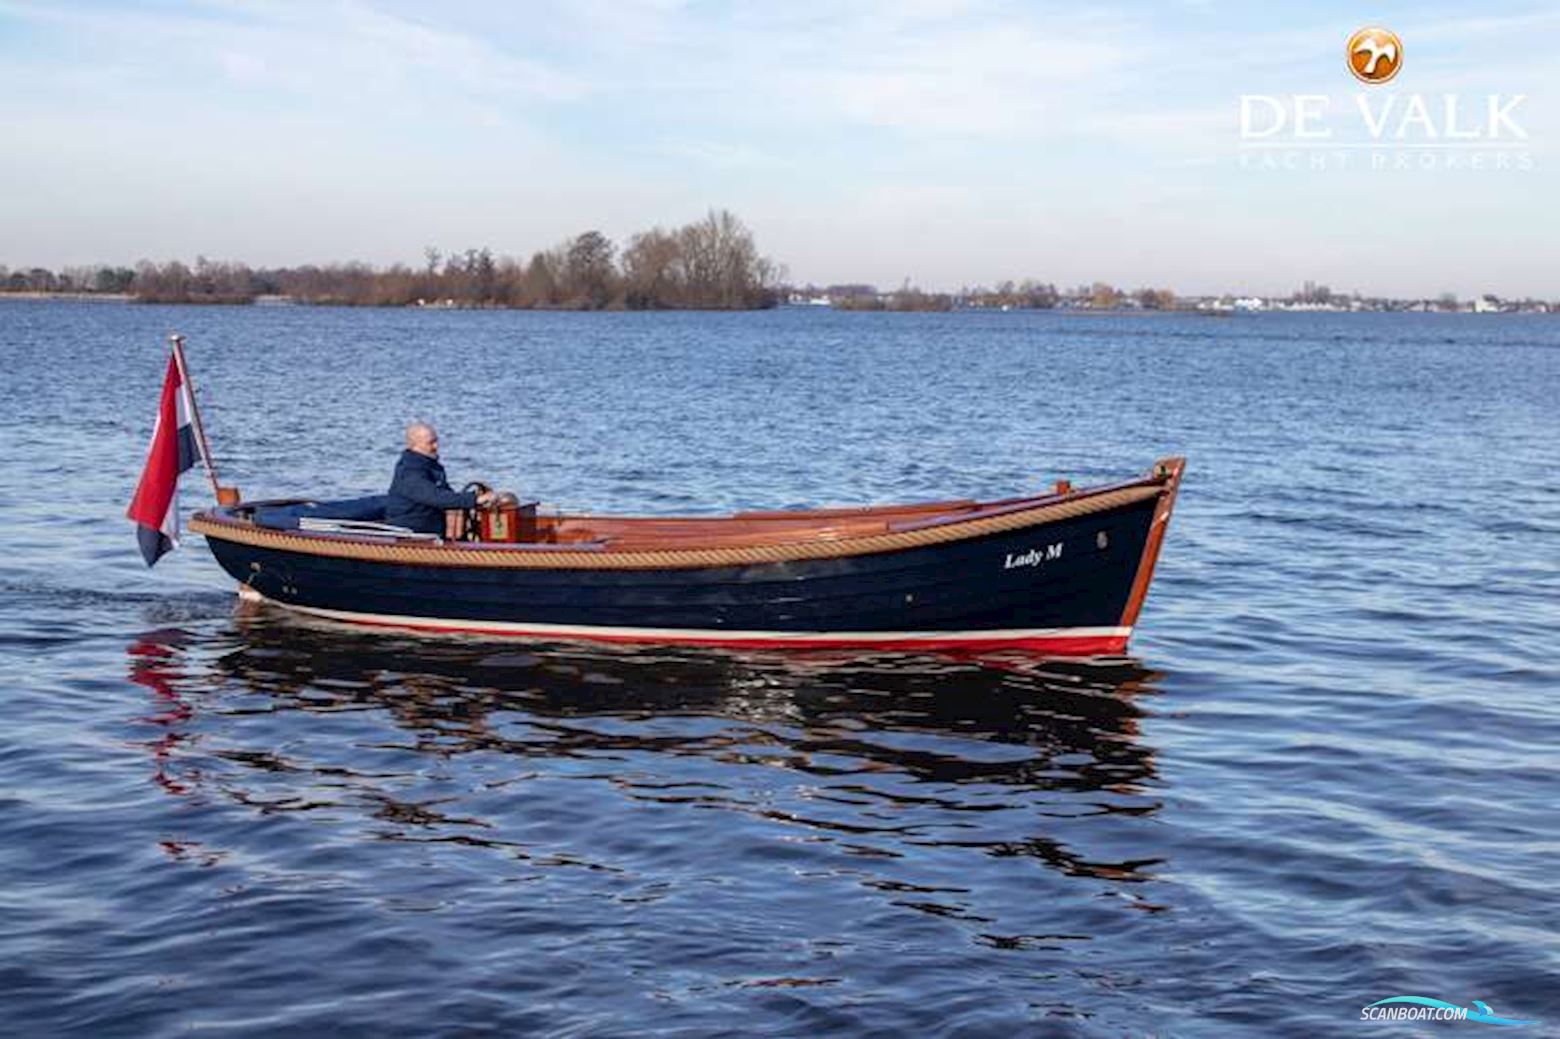 Wester Engh Goldenhorn 685 Sloep Motorbåt 2001, med Volvo Penta motor, Holland